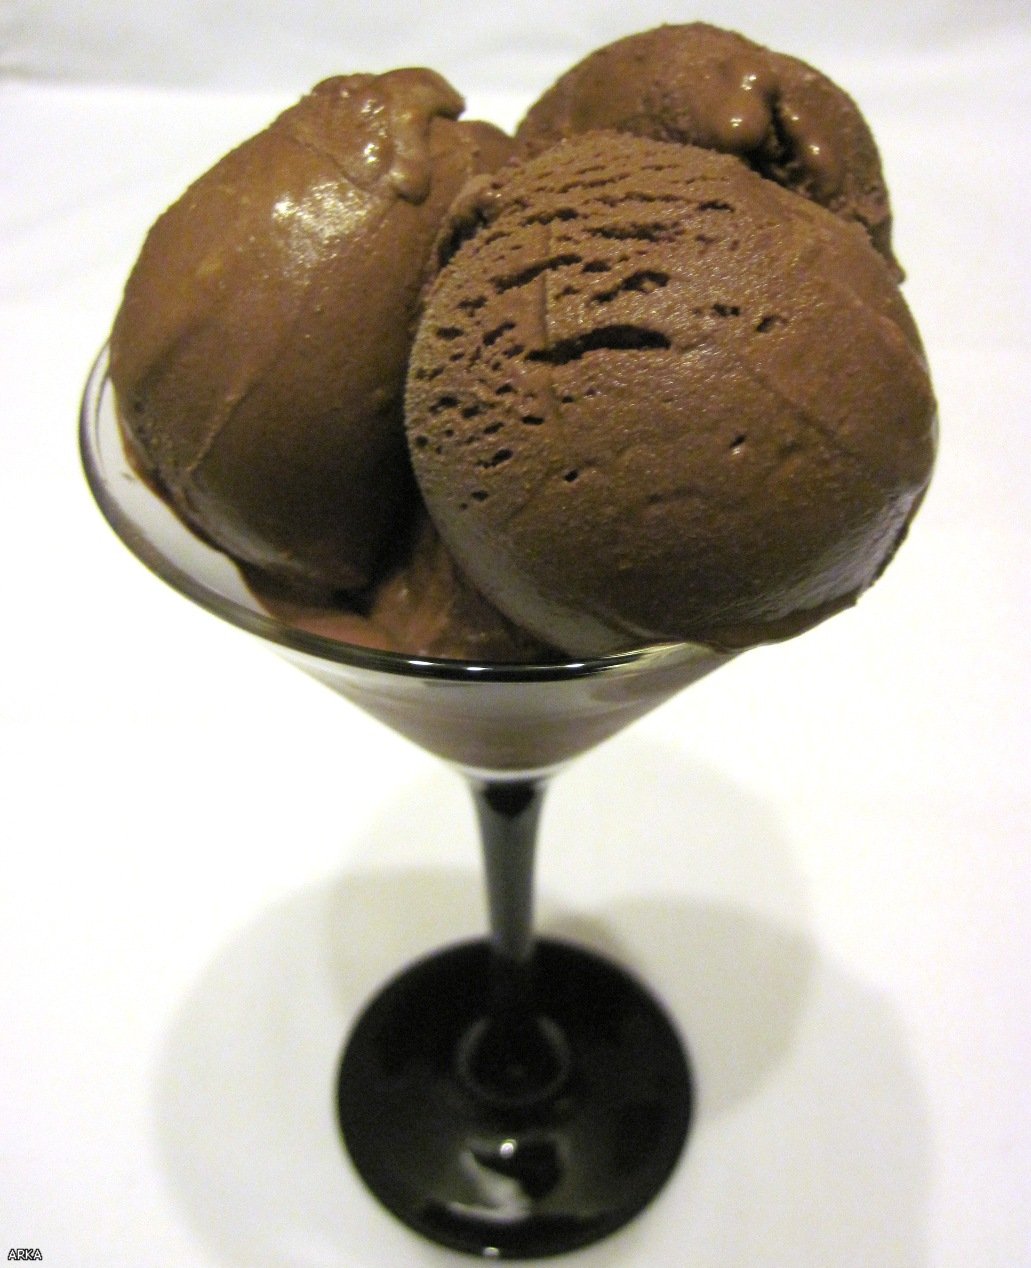 גלידת שוקולד